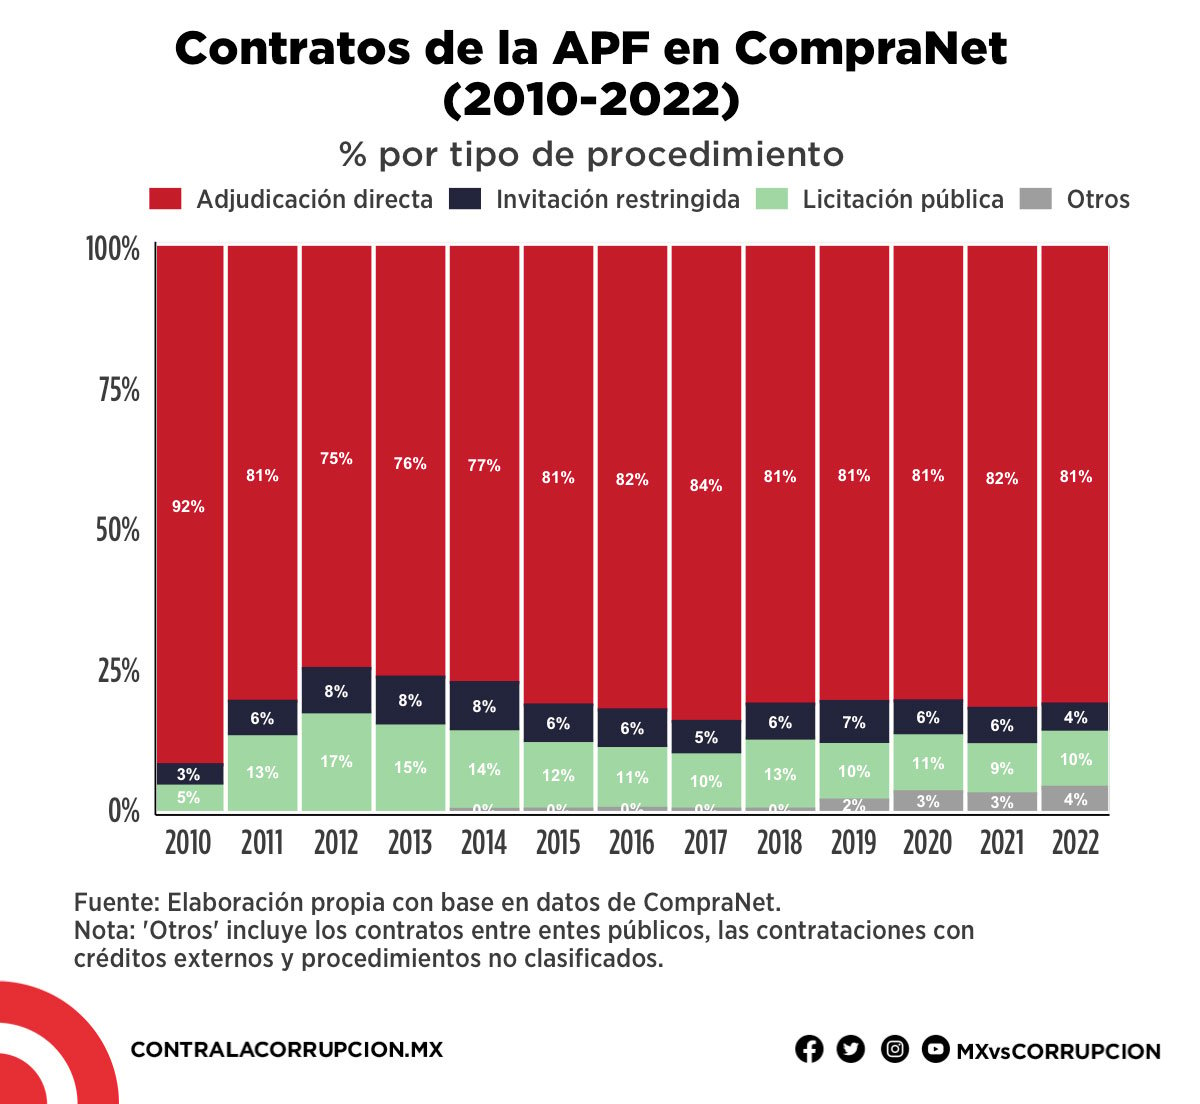 Contratos de la APF en CompraNet (2010-2022)